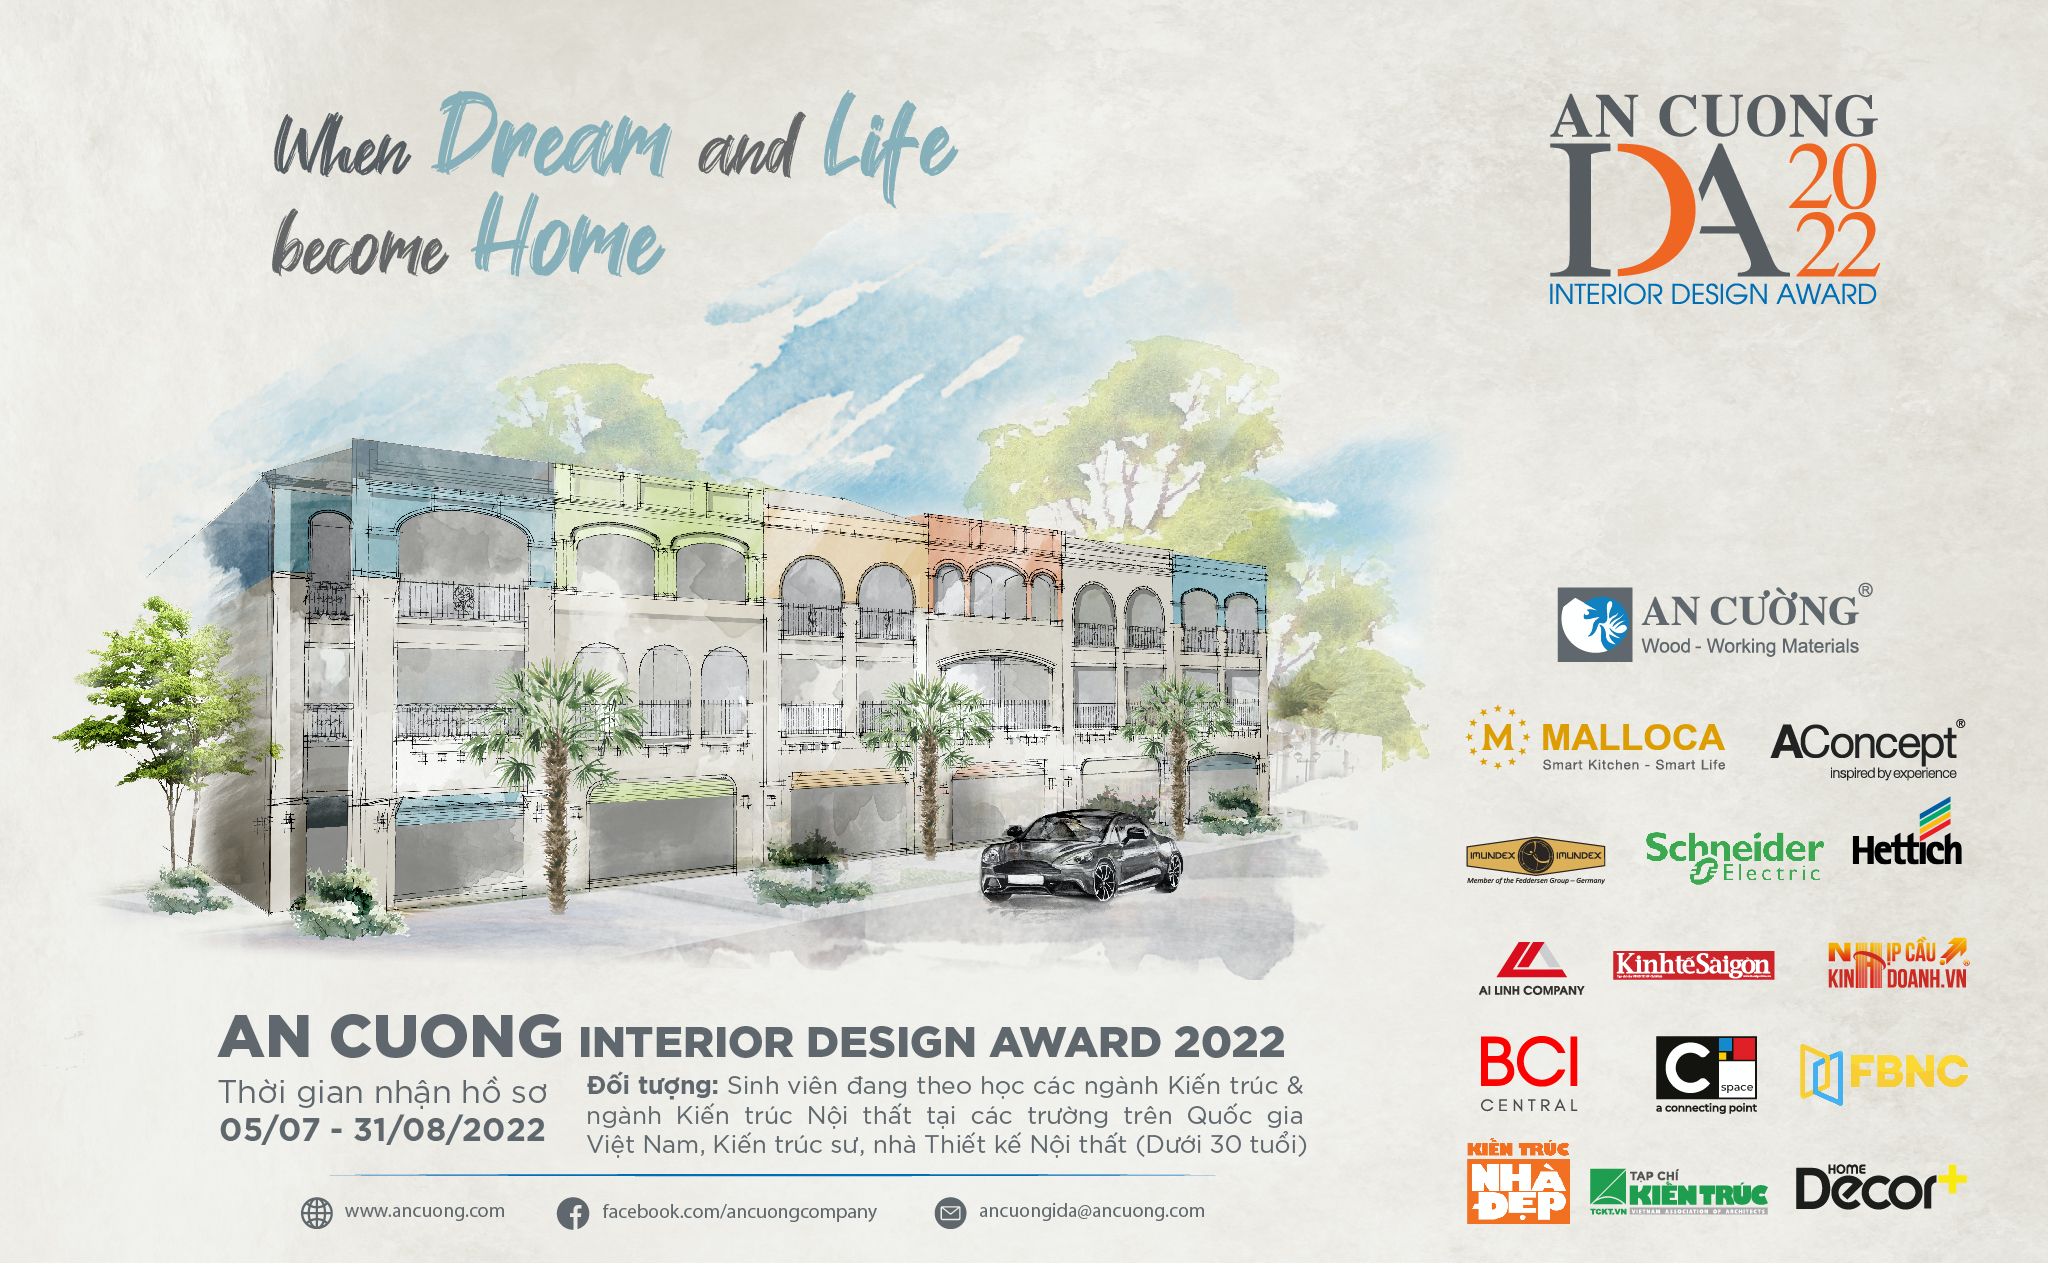 [QC] Gỗ An Cường (ACG) khởi động cuộc thi thiết kế nội thất An Cuong Interior Design Award 2022